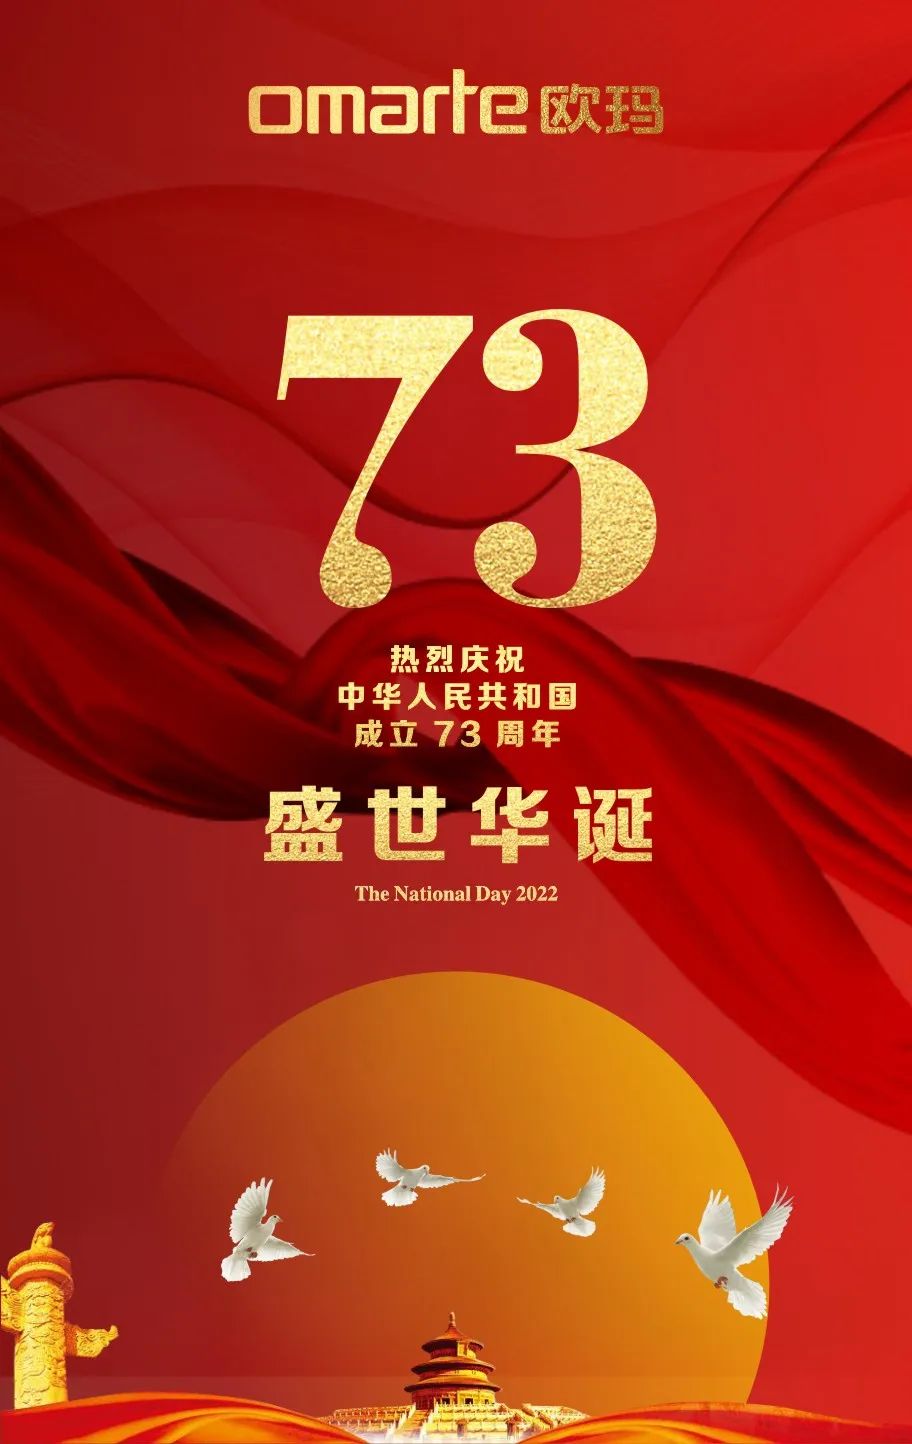 99re久久精品99都是精品燈光慶祝中華人民共和國成立73周年